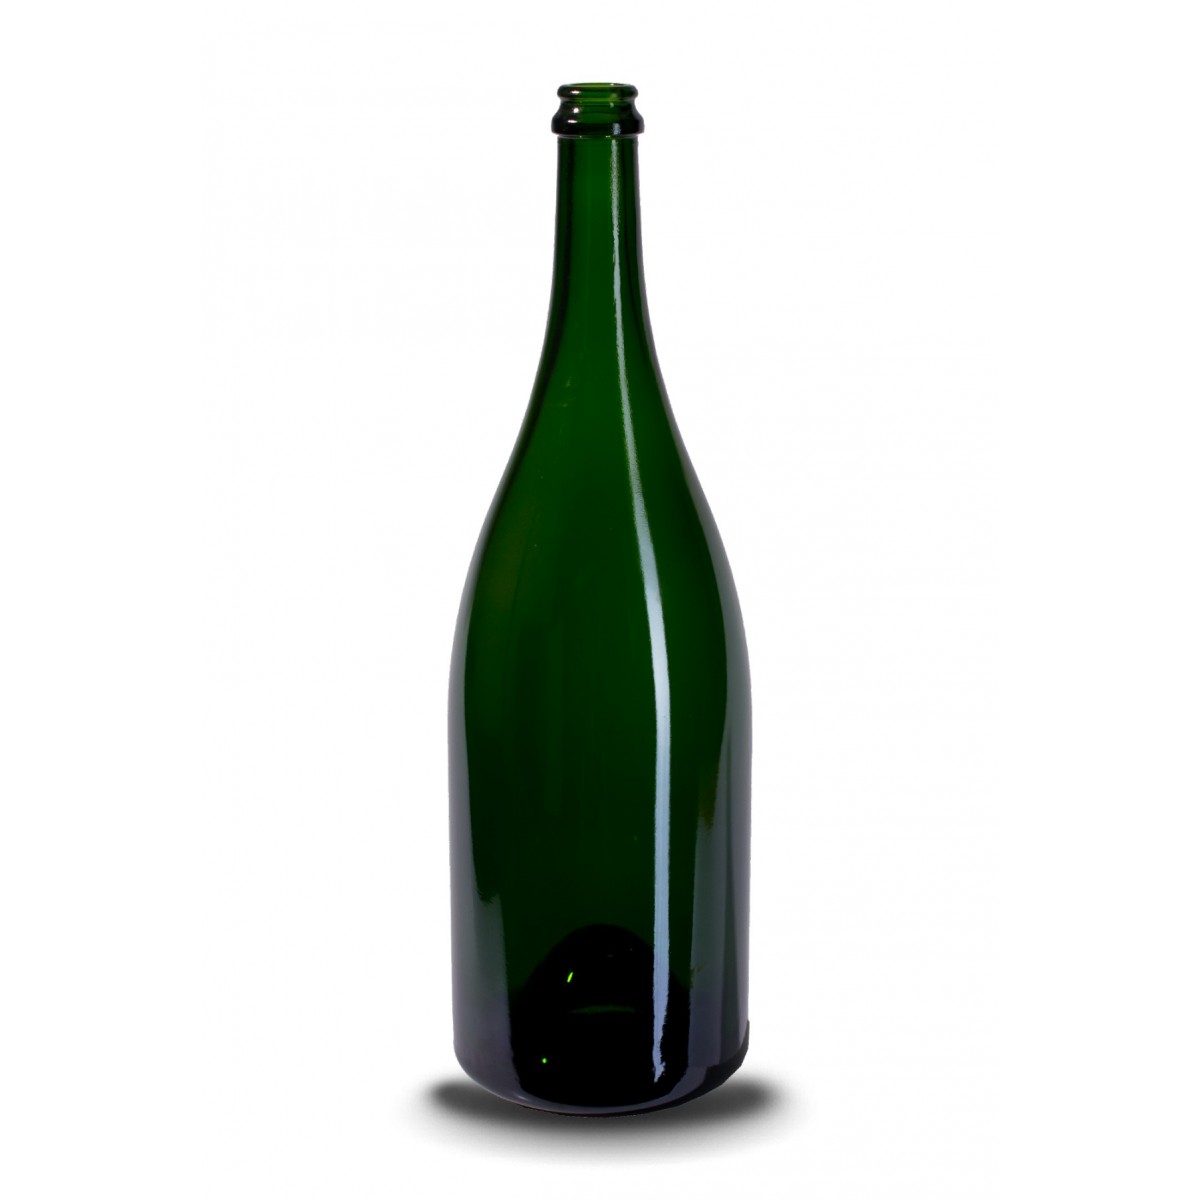 Šampano stiklinis butelis 1.5l, 1730g